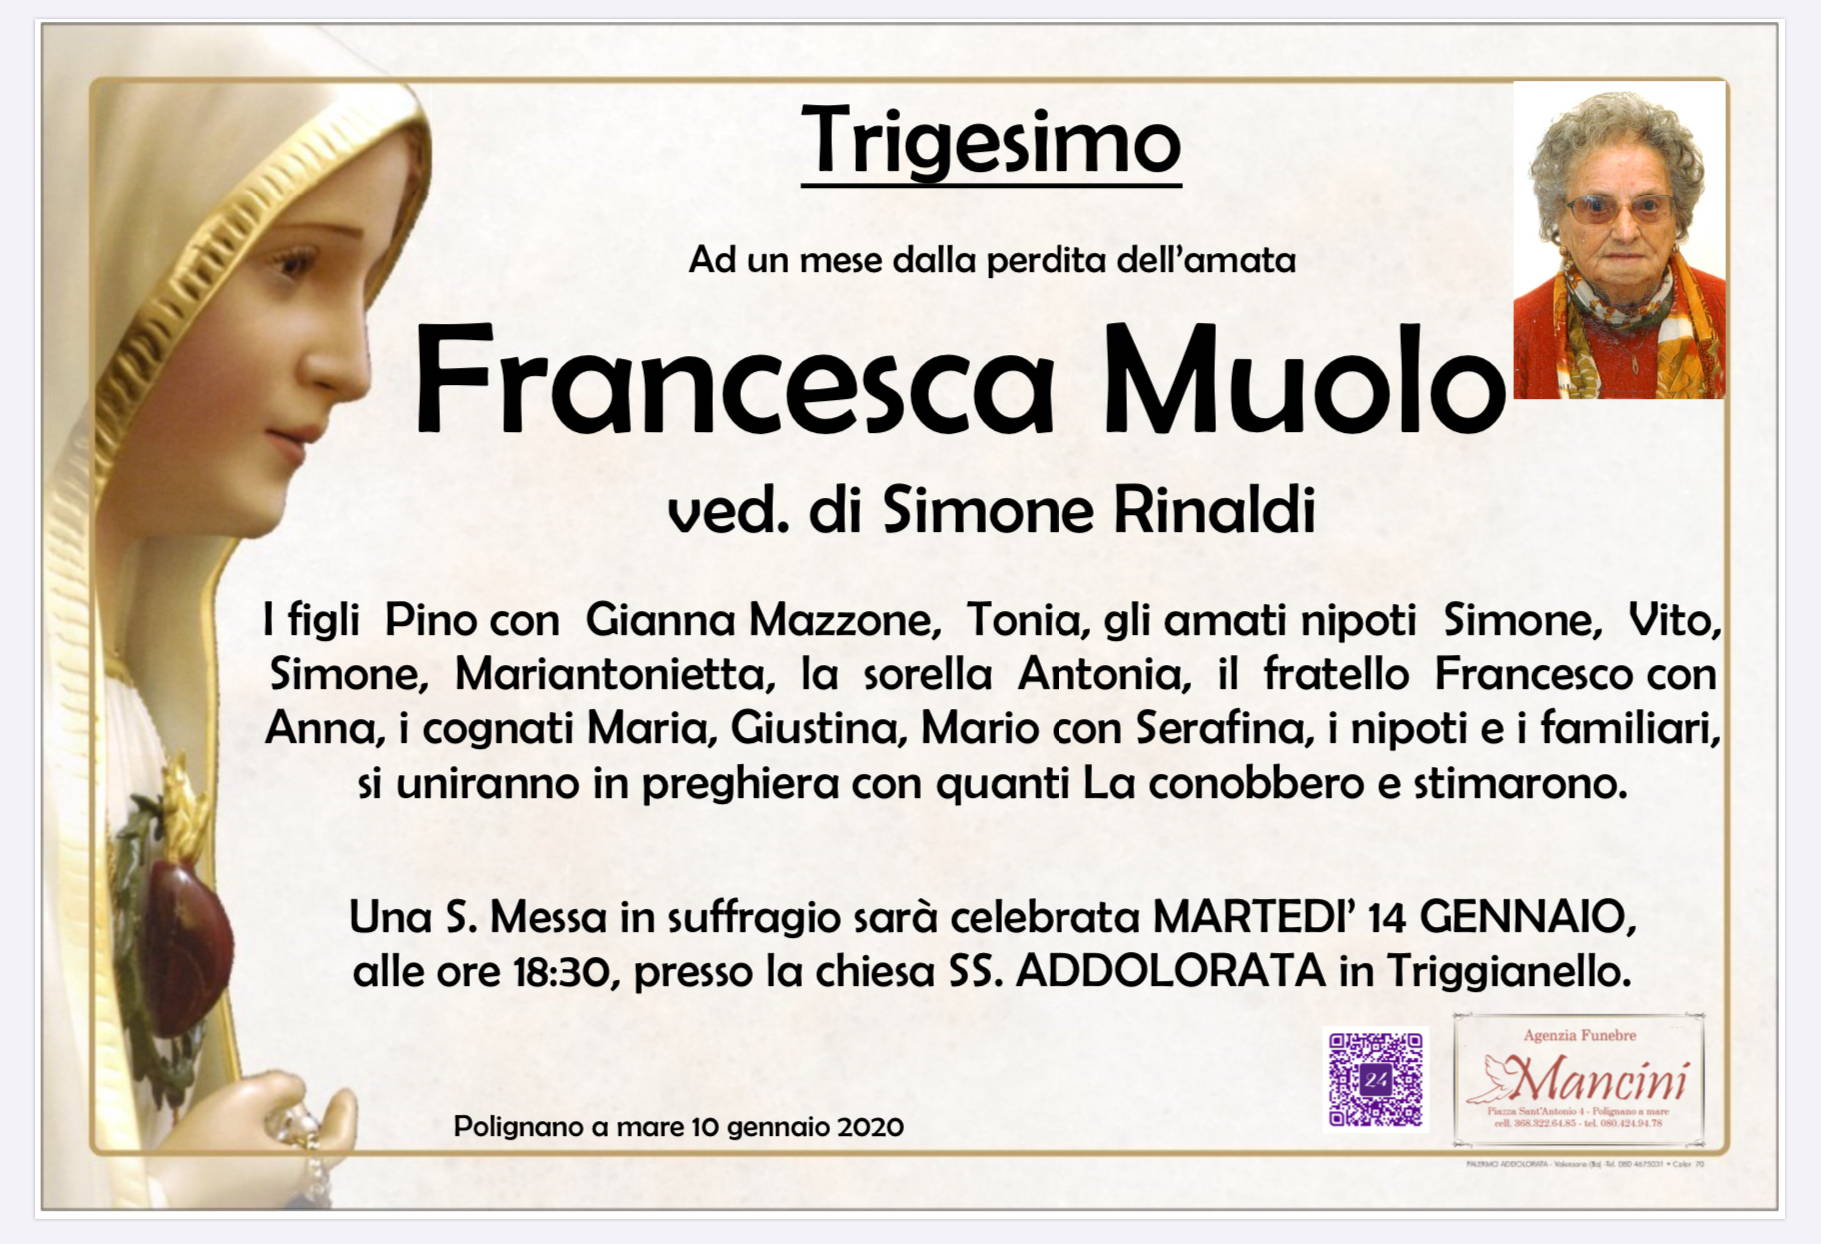 Francesca Muolo